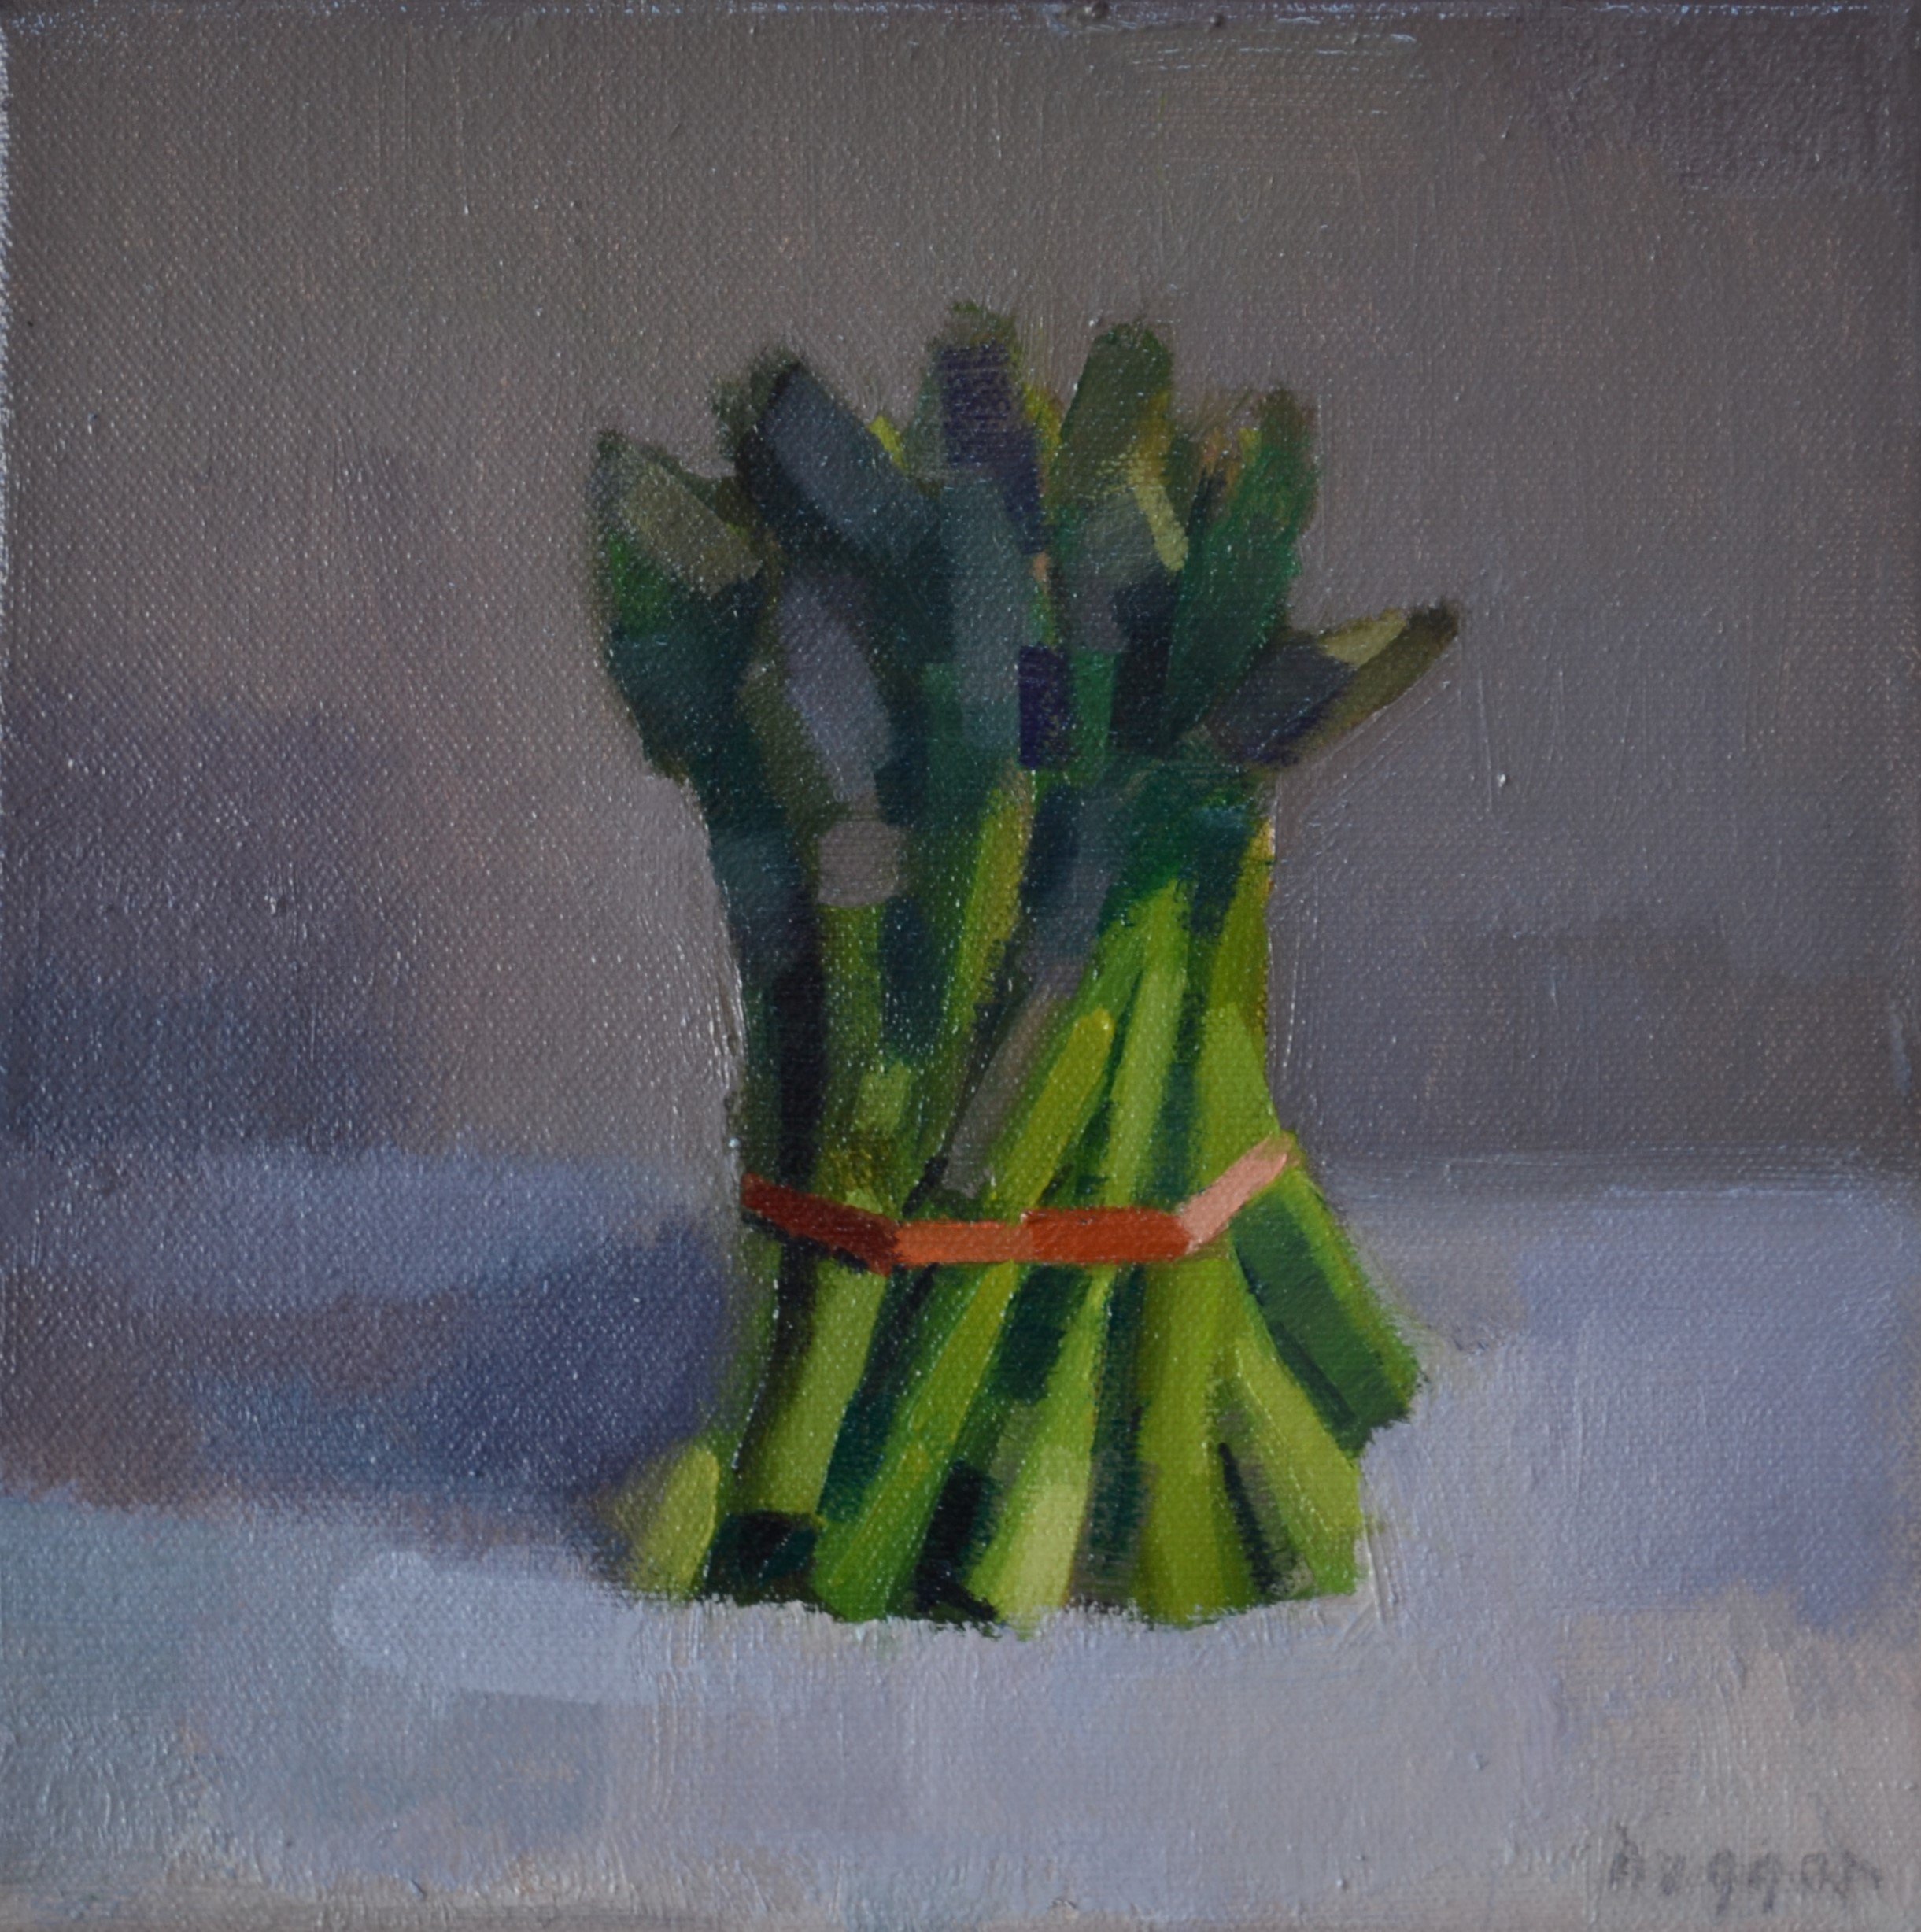 Asparagus tips 20 x 20 cm oil on canvas.JPG